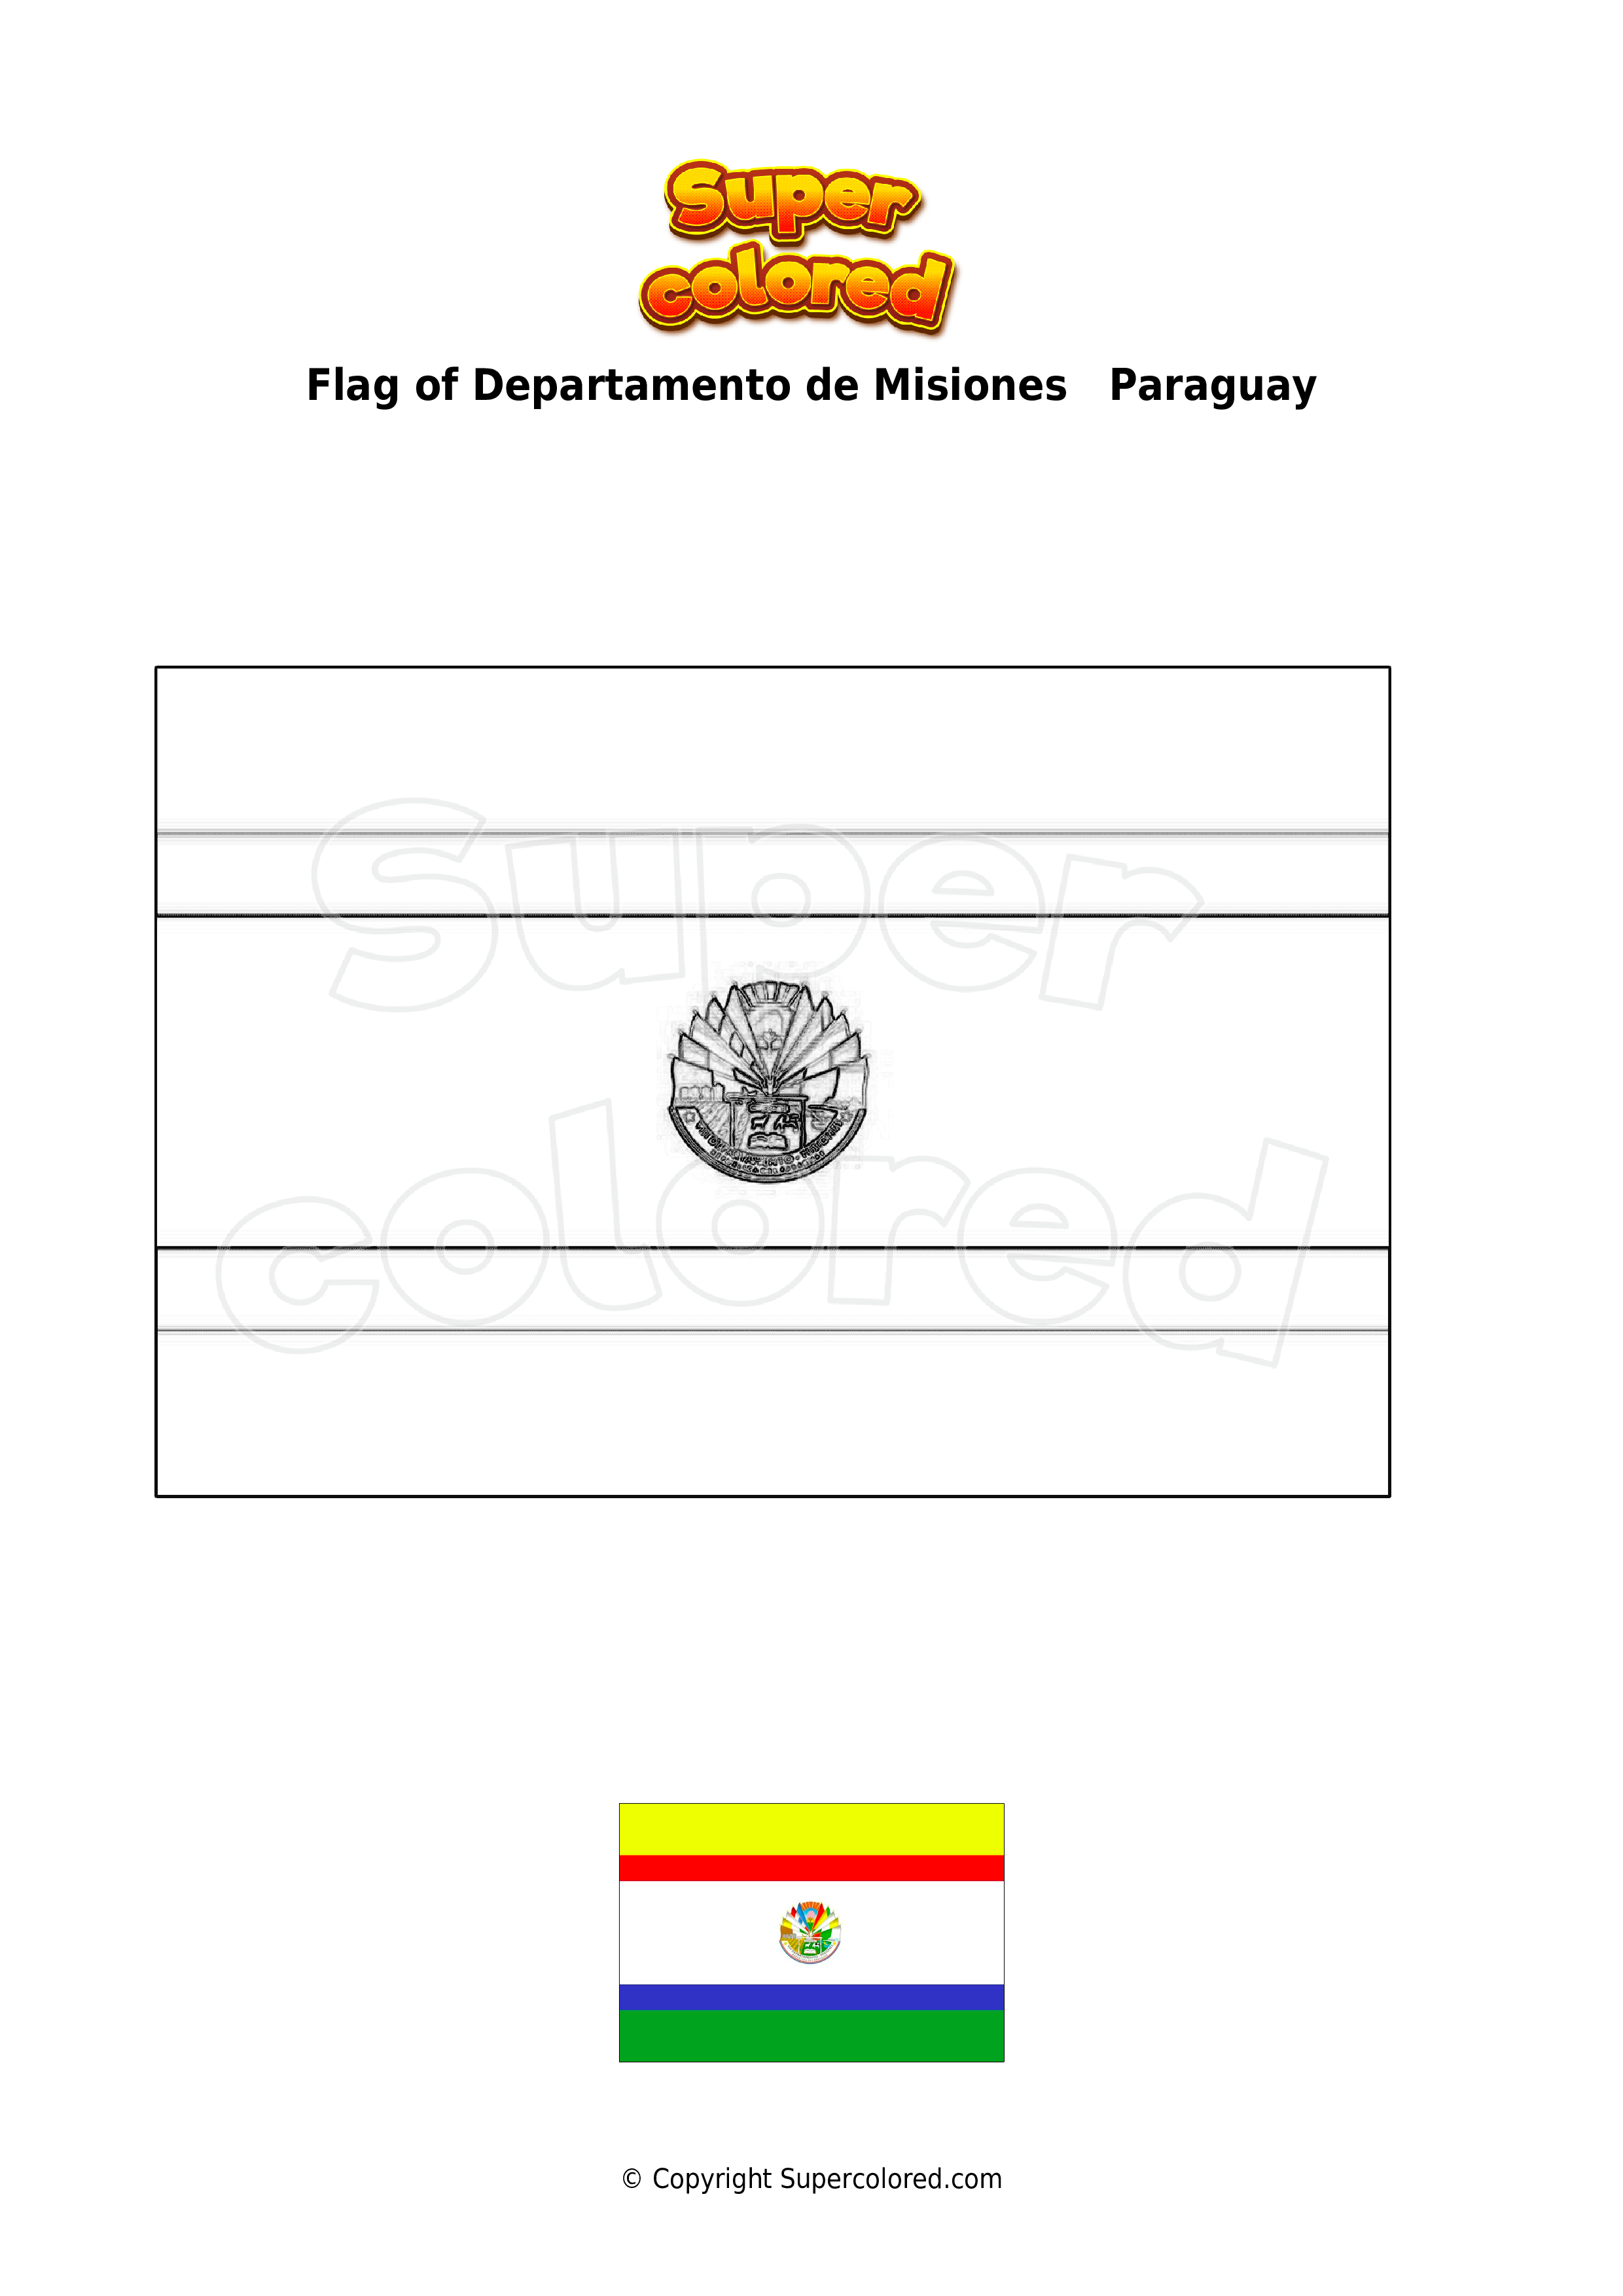 coloring-page-flag-of-departamento-de-misiones-paraguay-supercolored